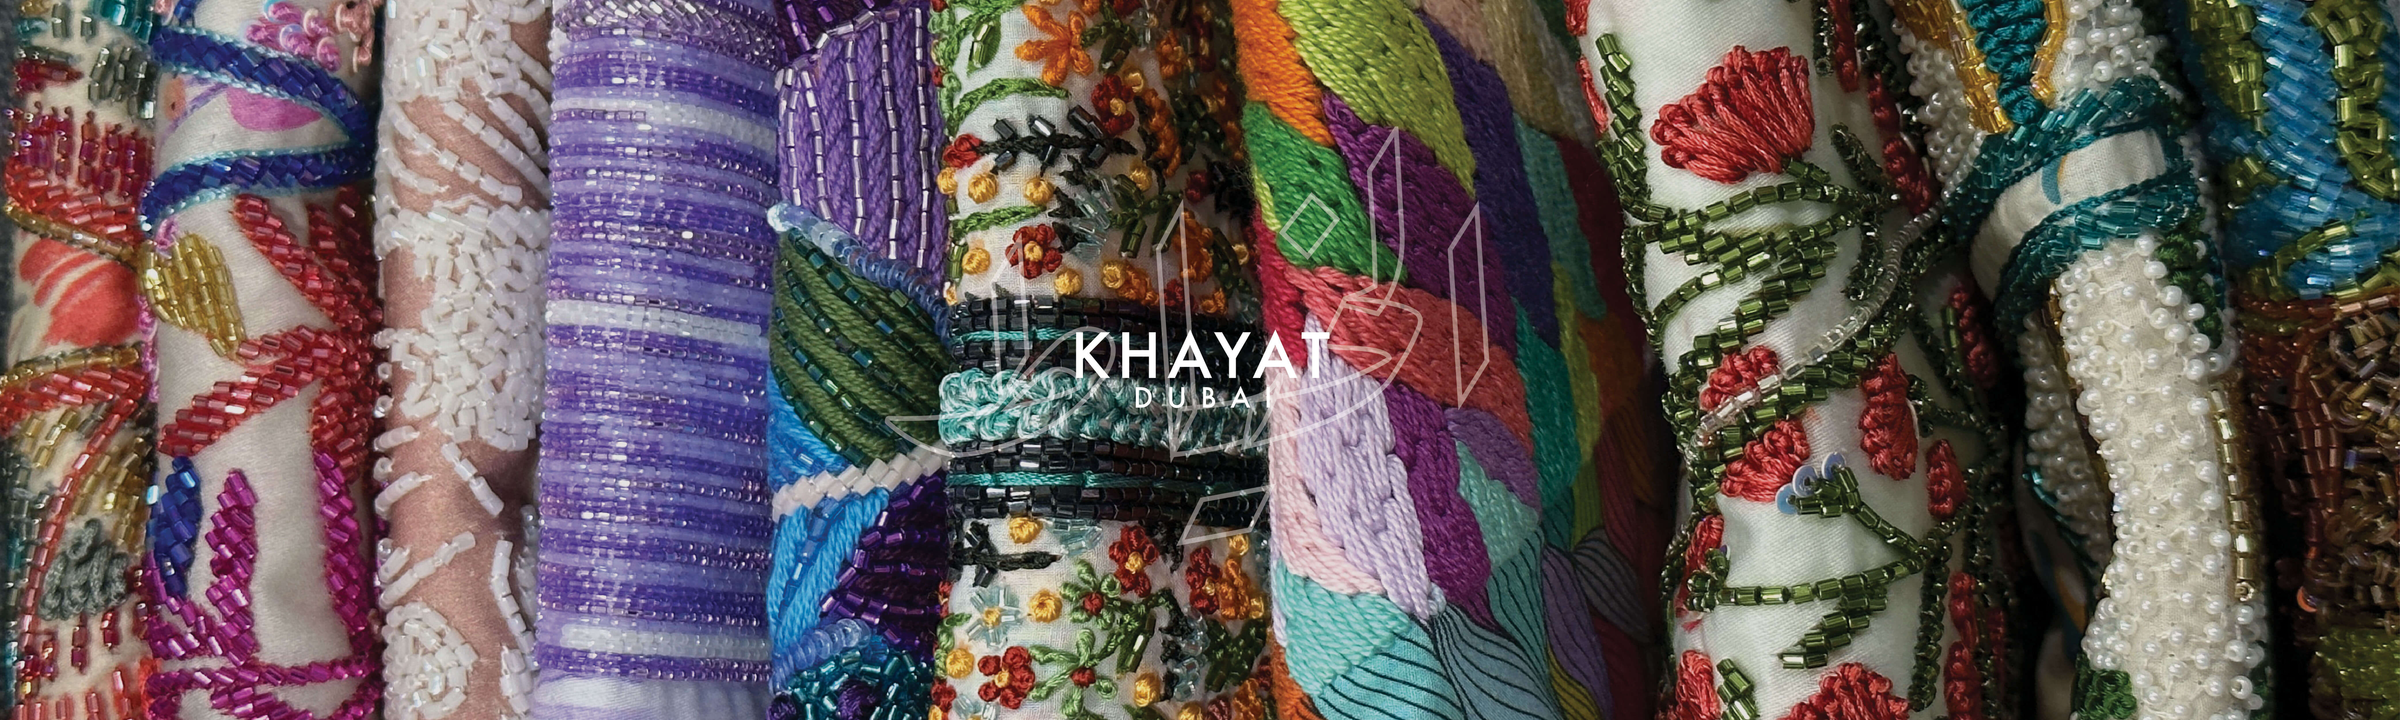 Khayat - Premium Mukhawar